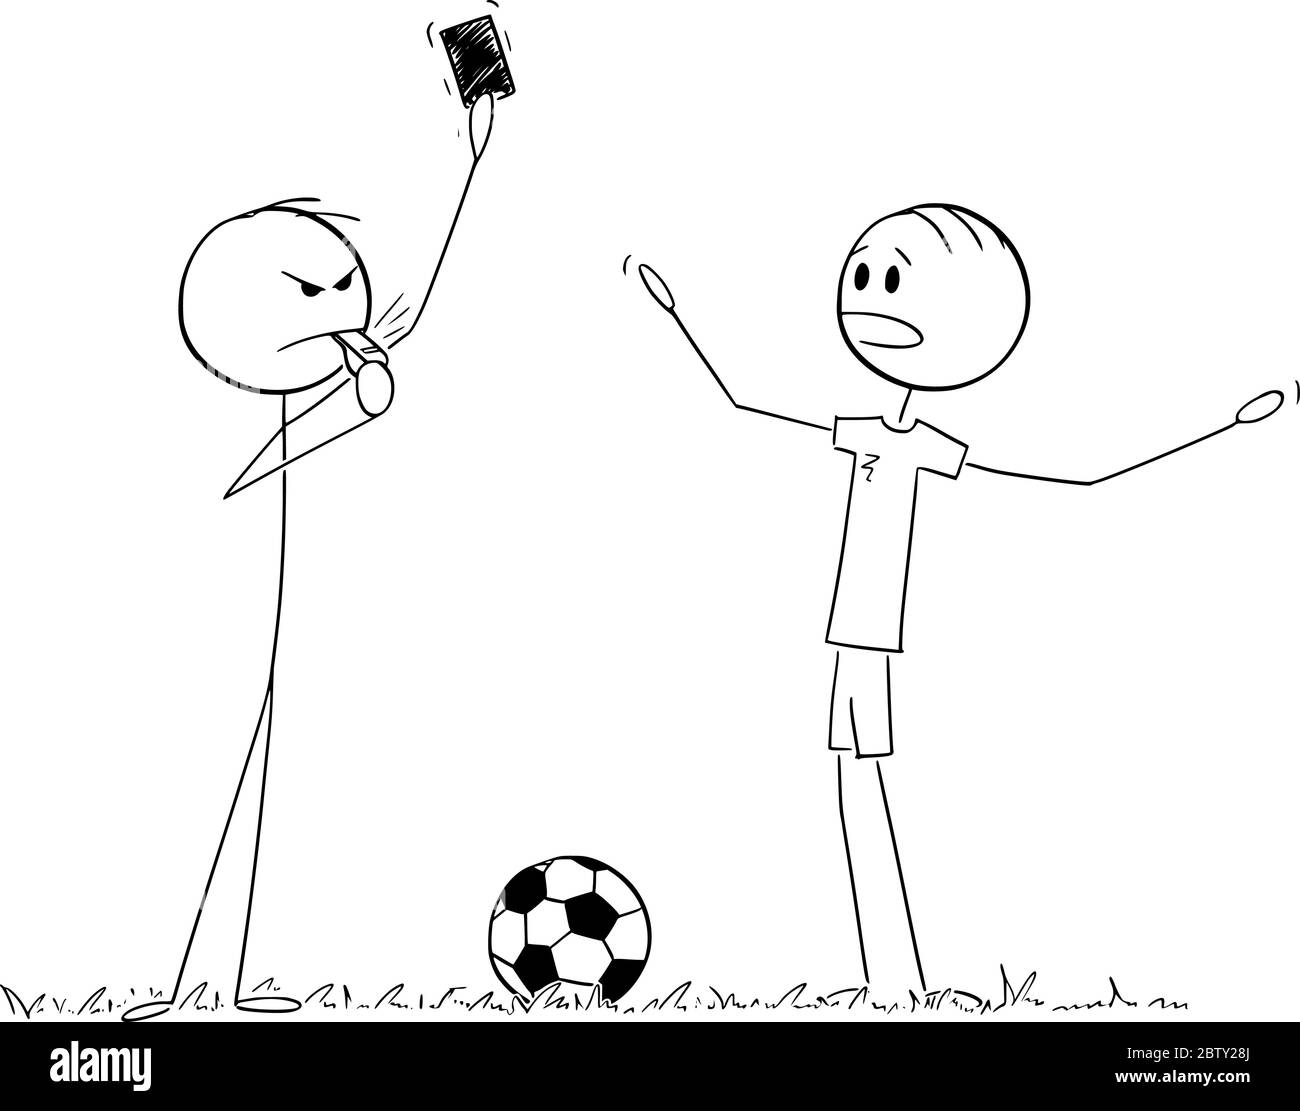 Vektor Cartoon Stick Figur Zeichnung konzeptionelle Illustration von ernsten Fußball oder Fußball Schiedsrichter zeigt rote Karte für Spieler. Stock Vektor